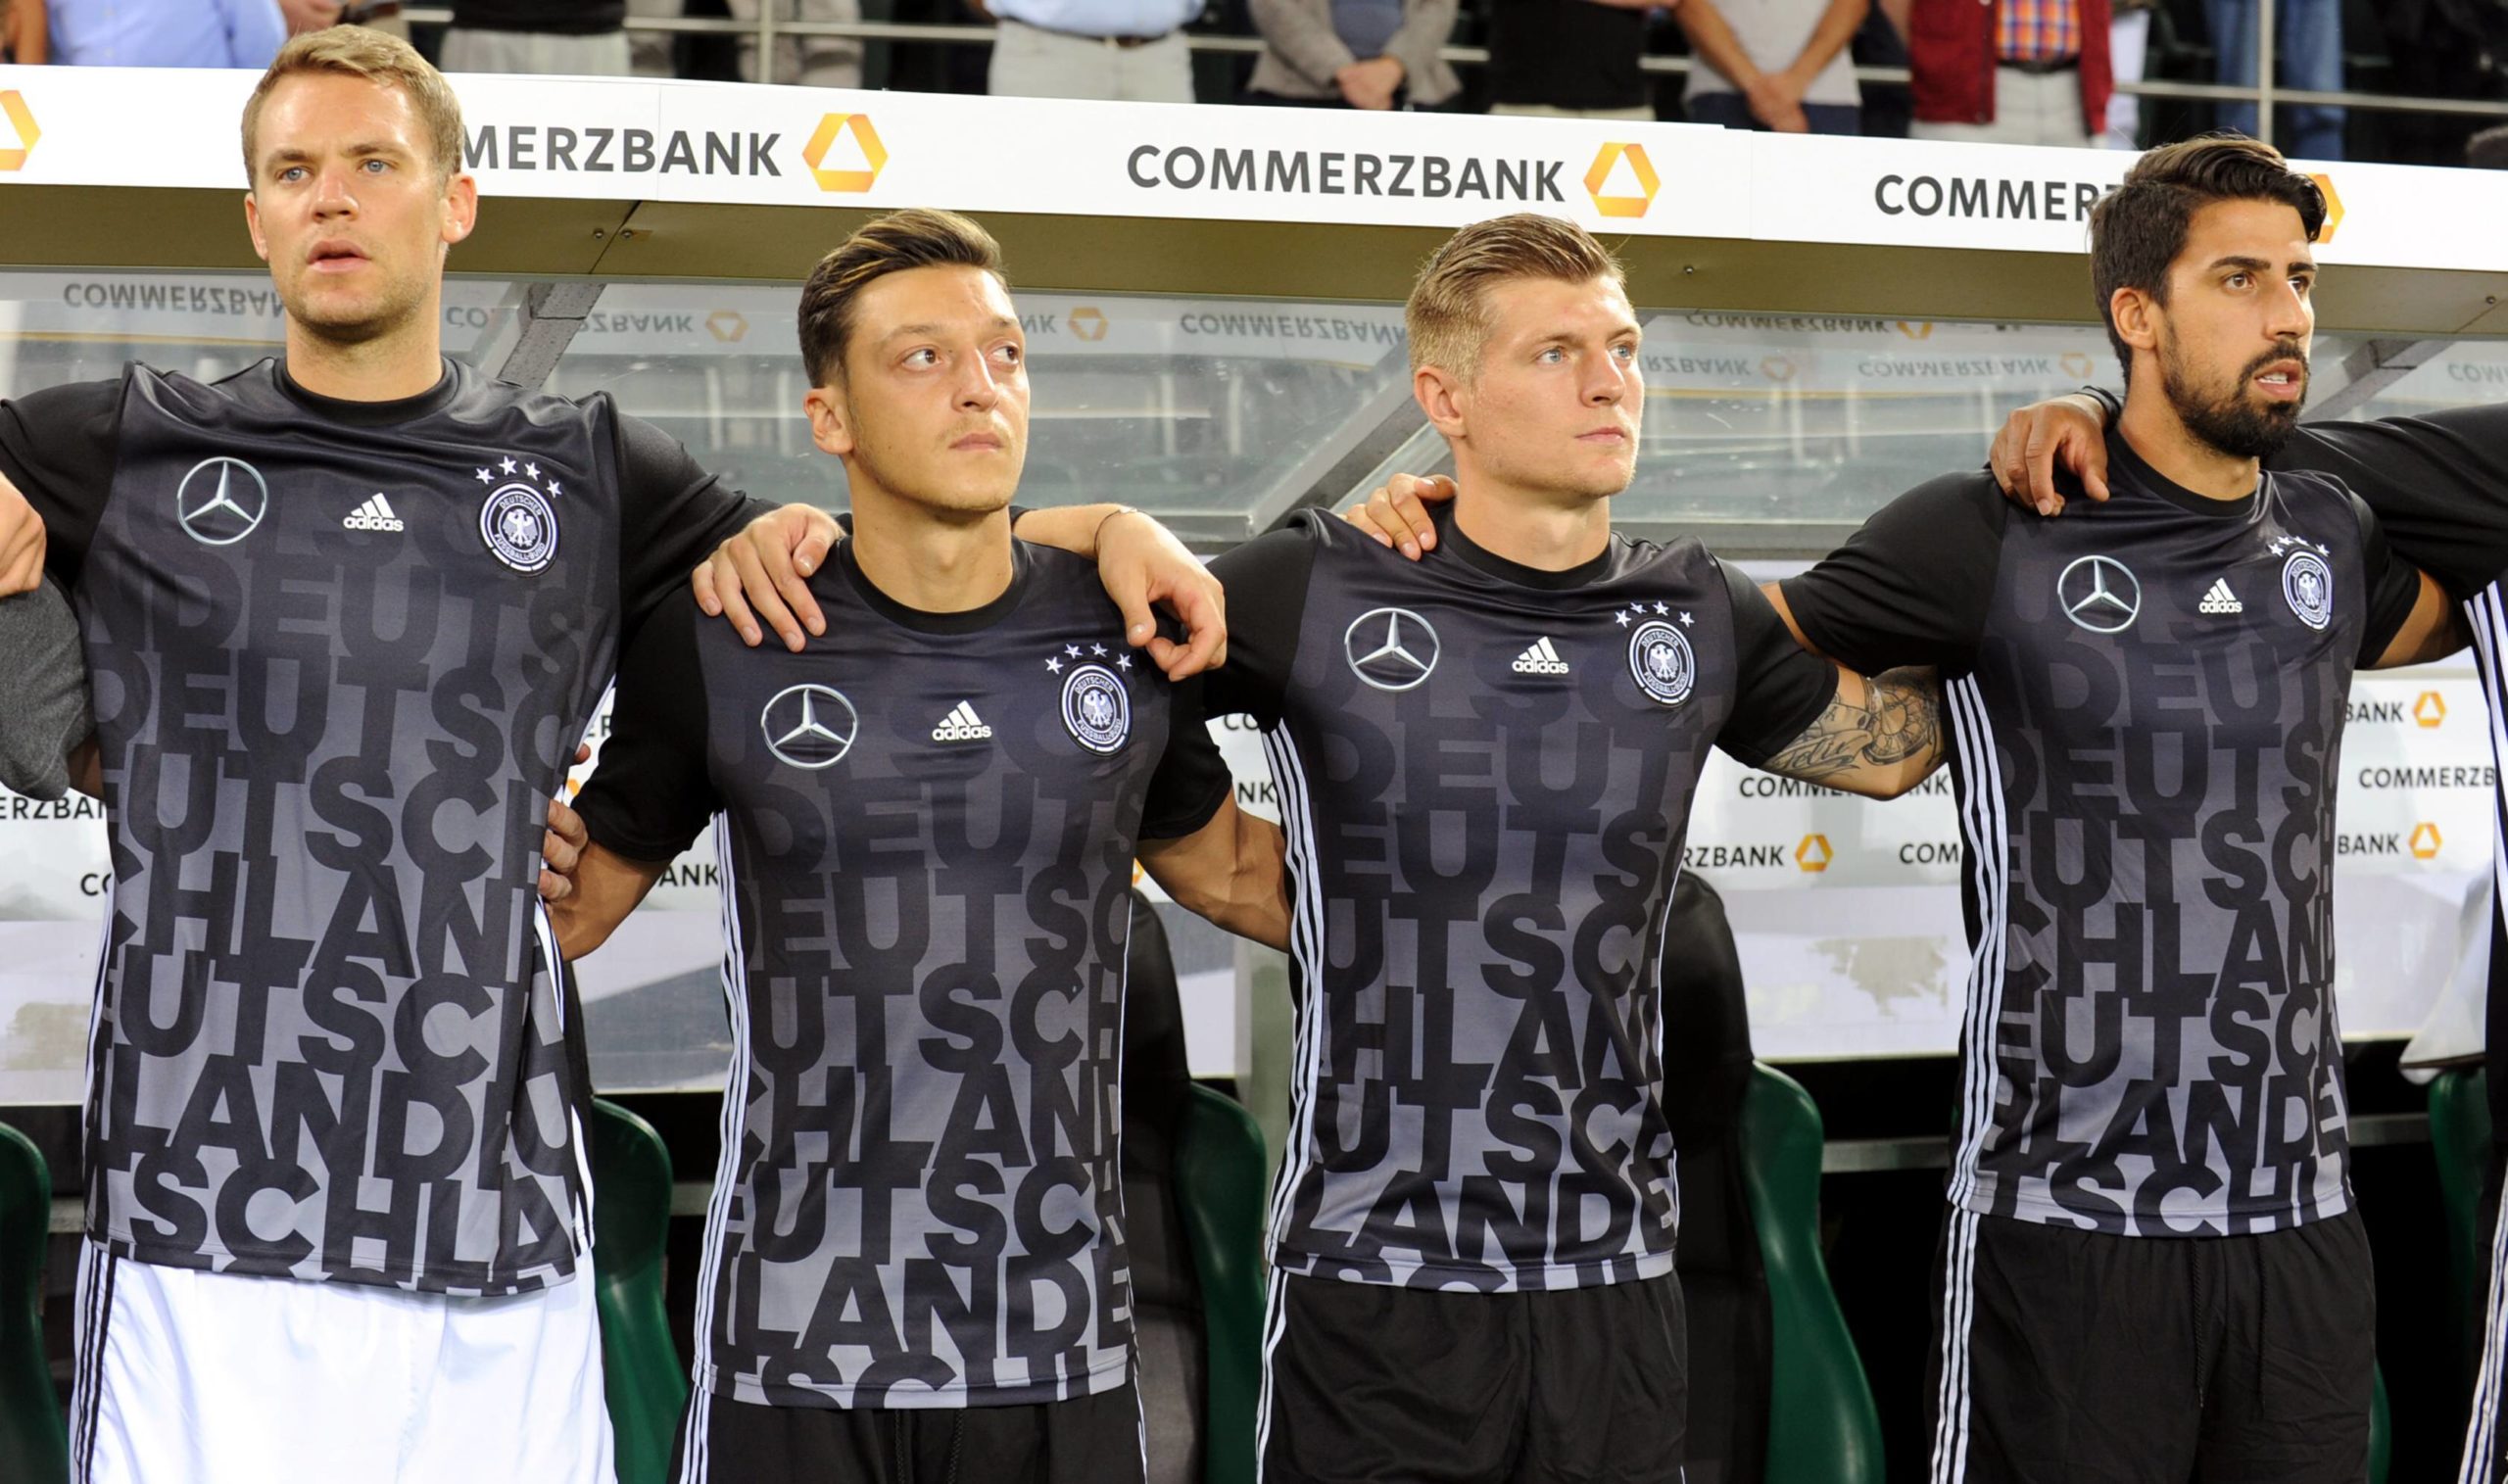 Neuer, Özil, Kroos und Khedira